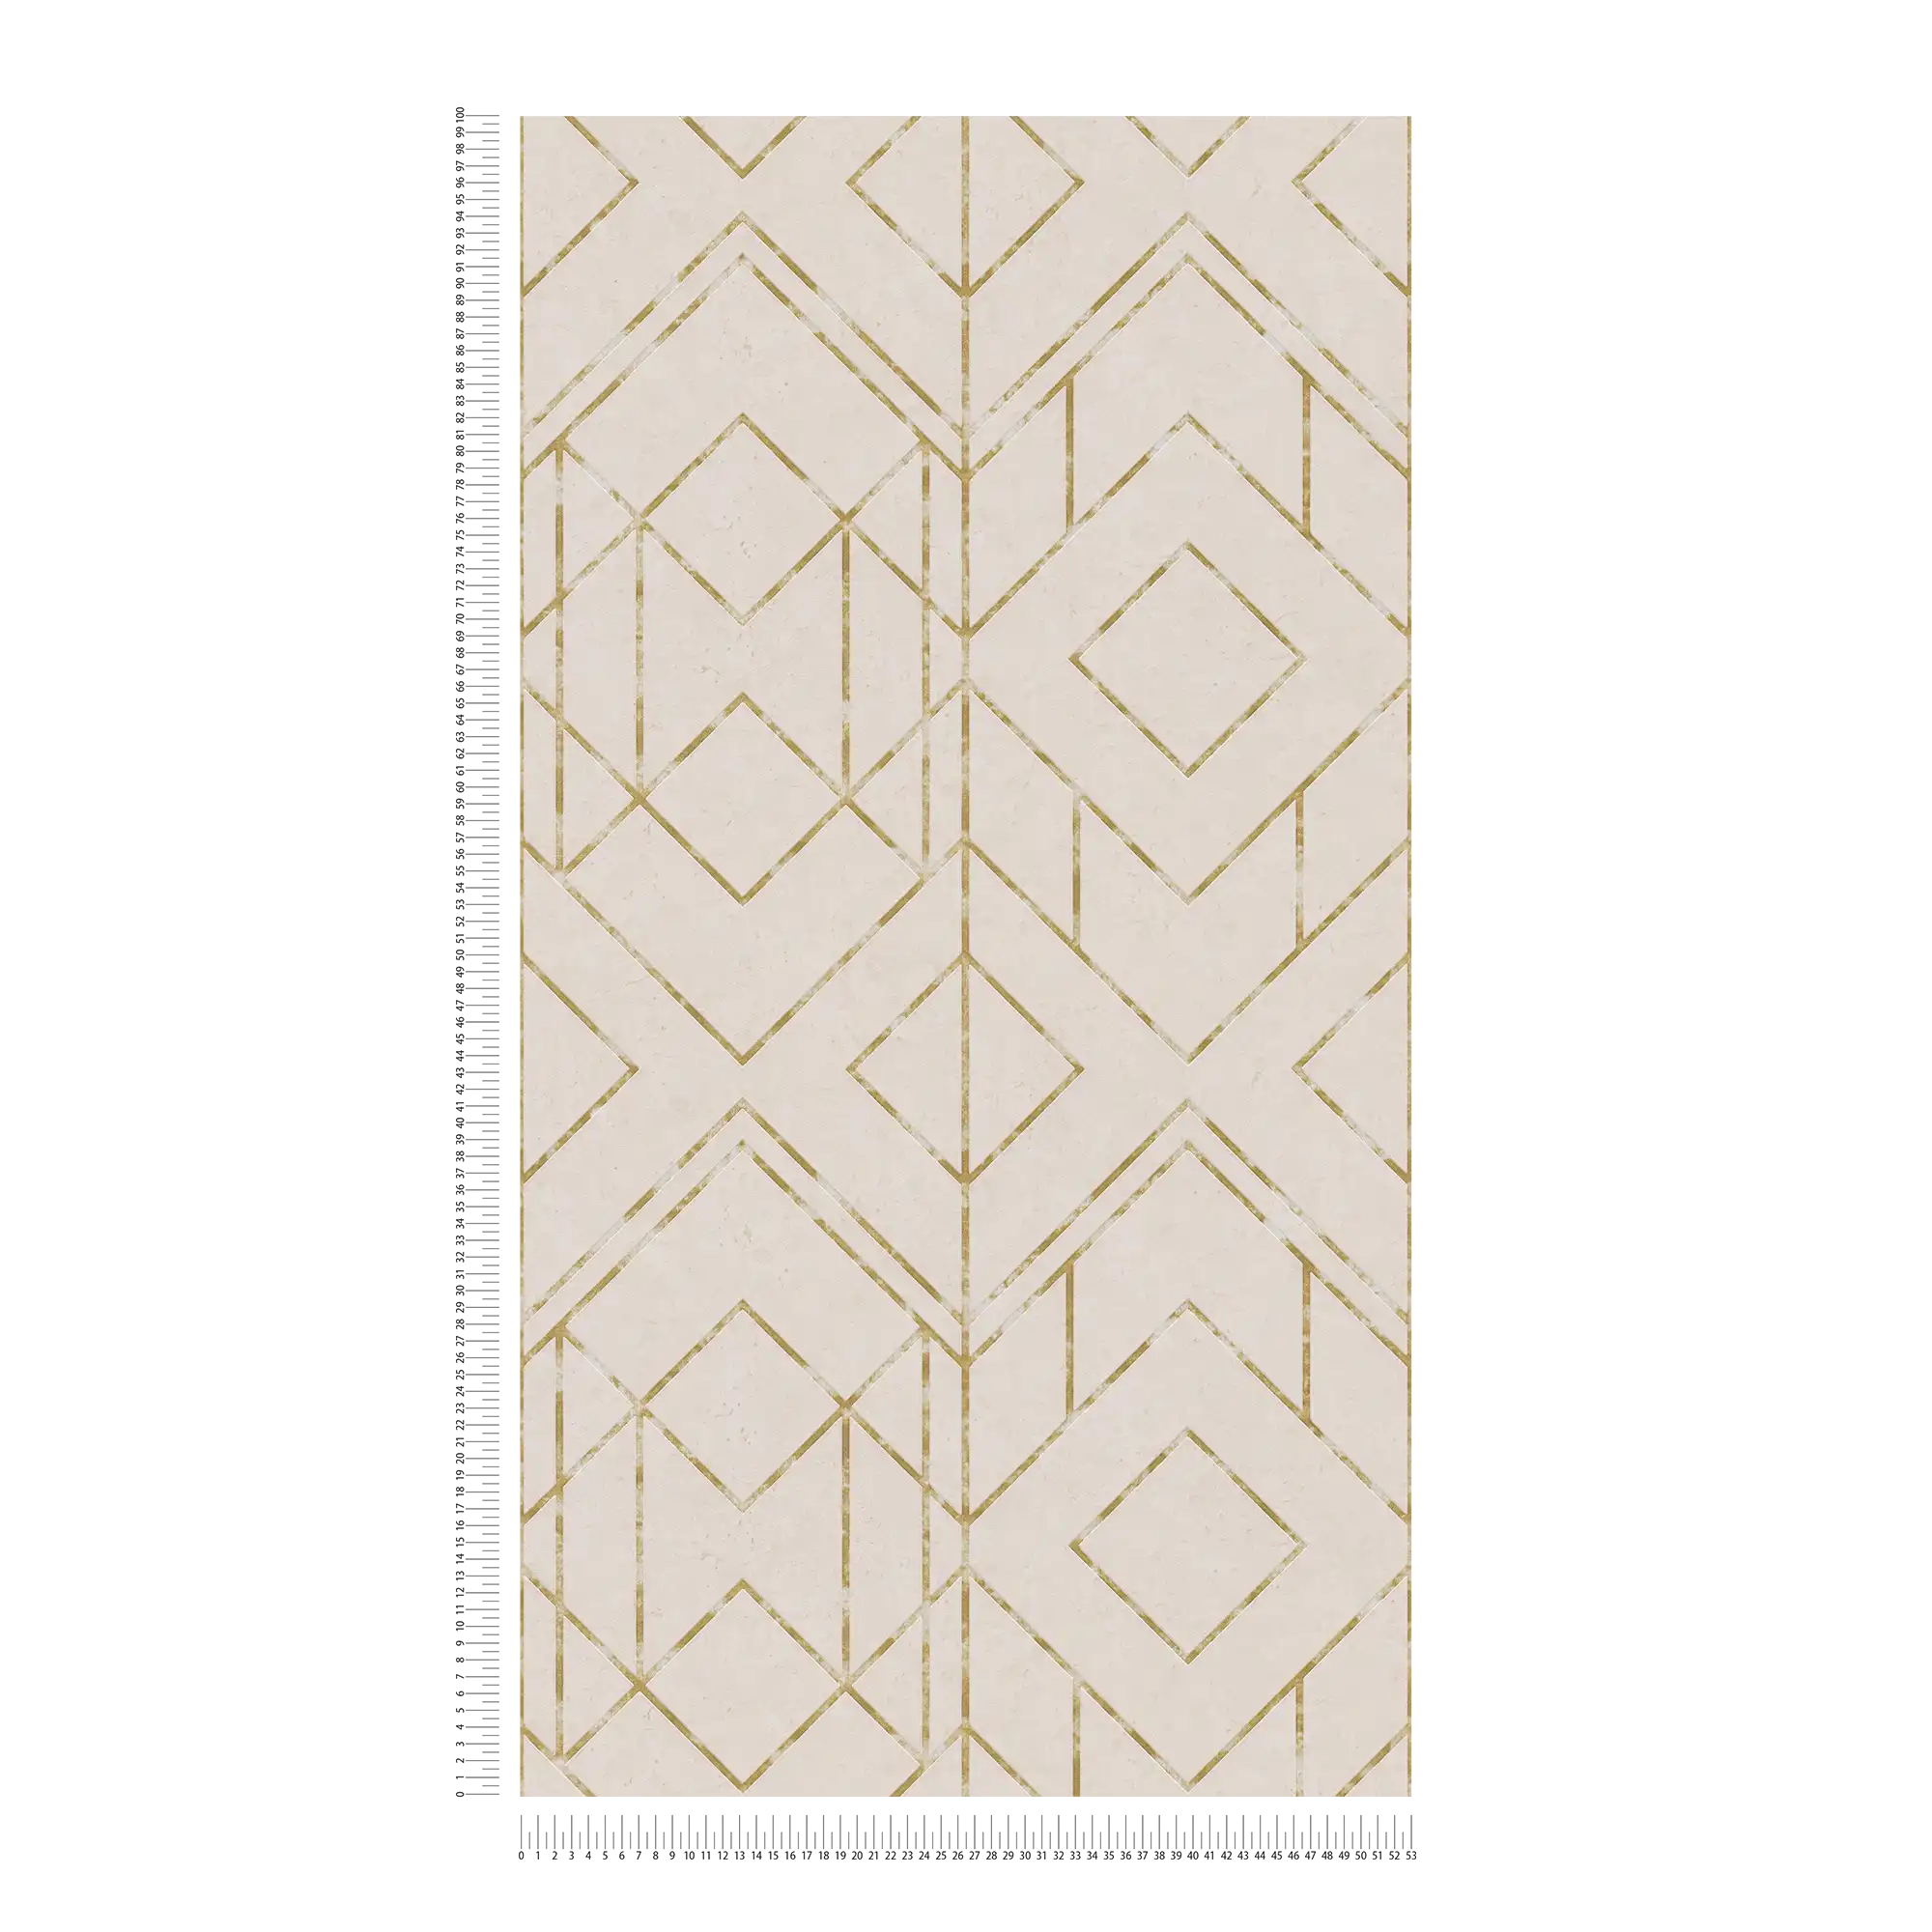             Carta da parati in tessuto non tessuto con effetto metallizzato e disegno grafico - beige, metallizzato
        